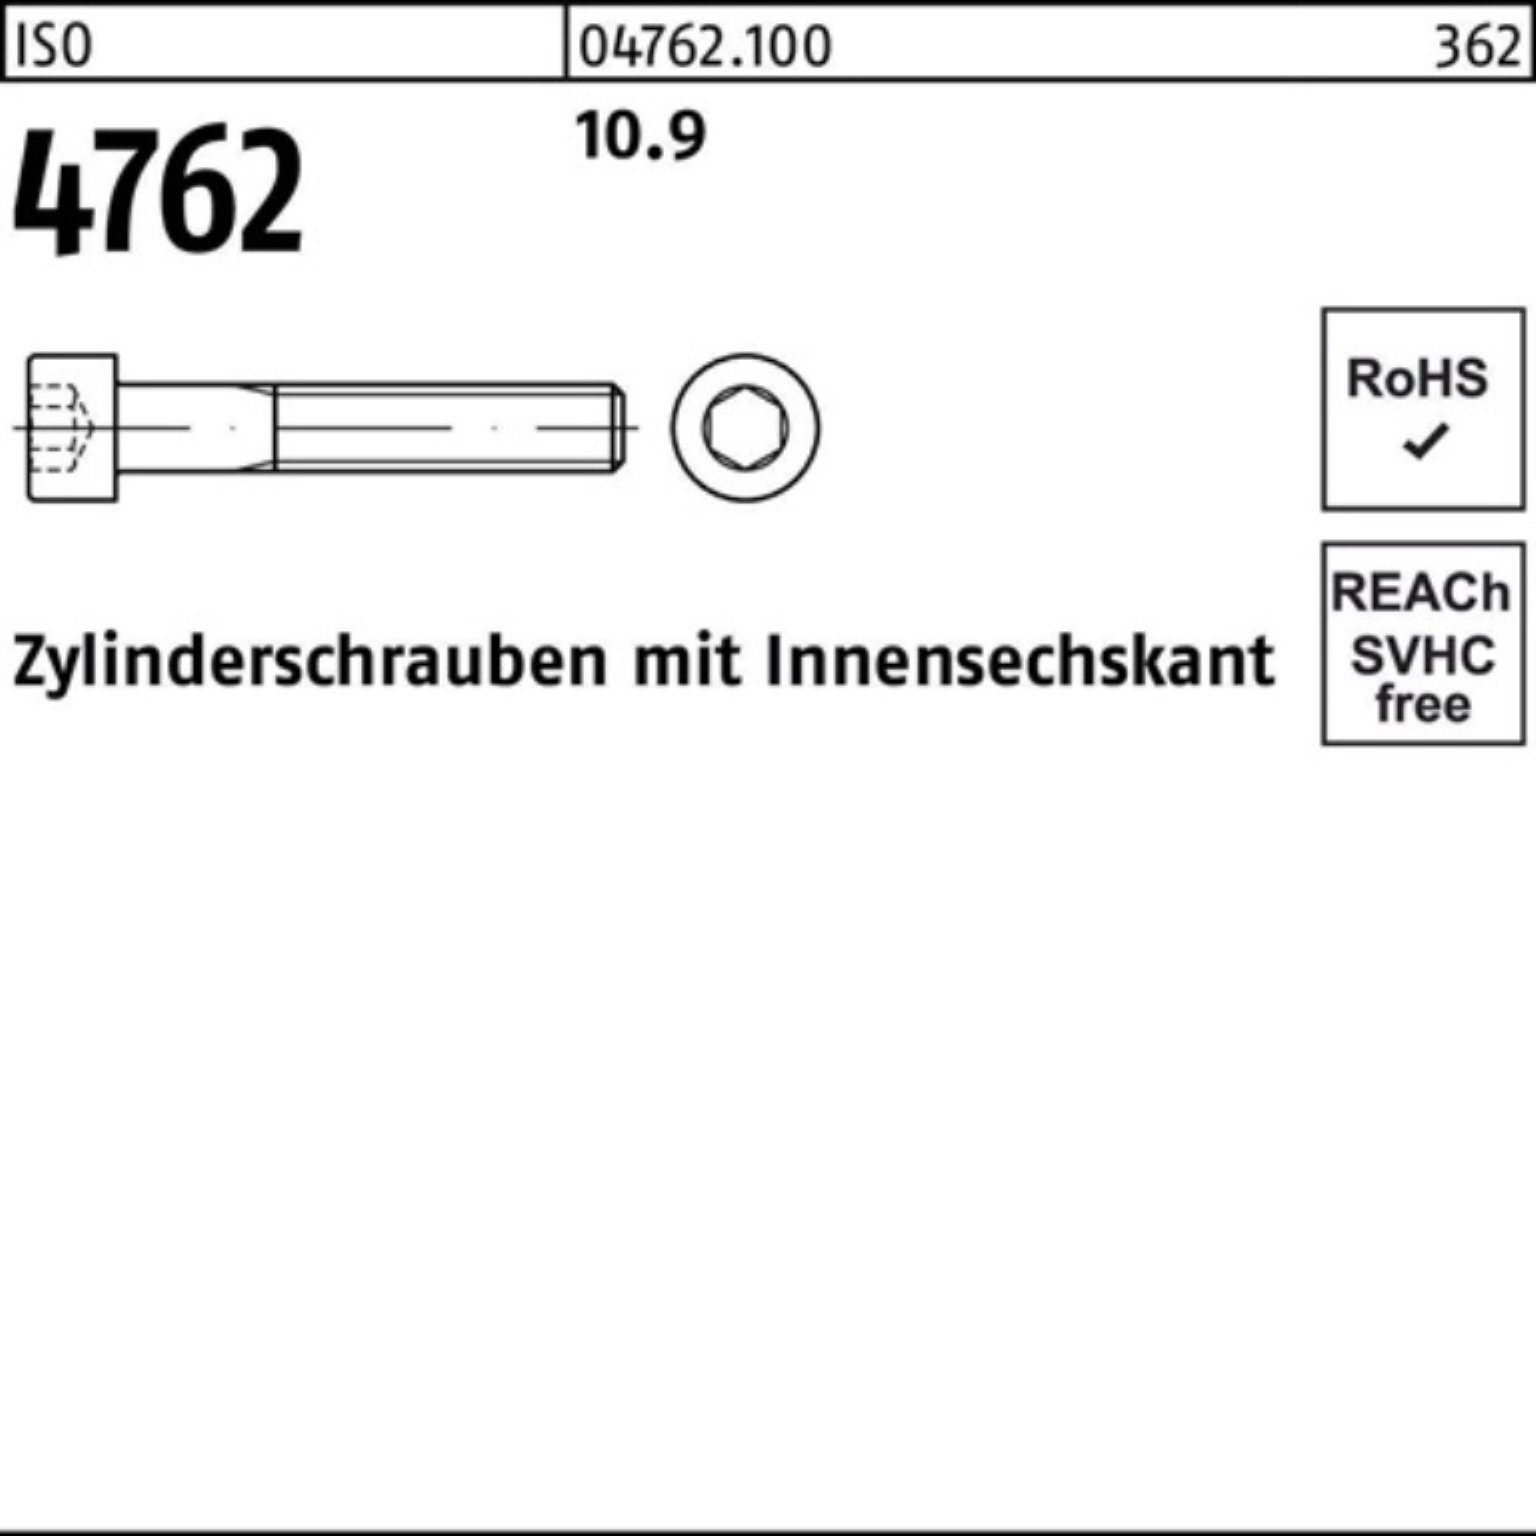 Reyher Zylinderschraube 400 Innen-6kt M36x 4762 Stück Zylinderschraube 1 10.9 100er Pack ISO